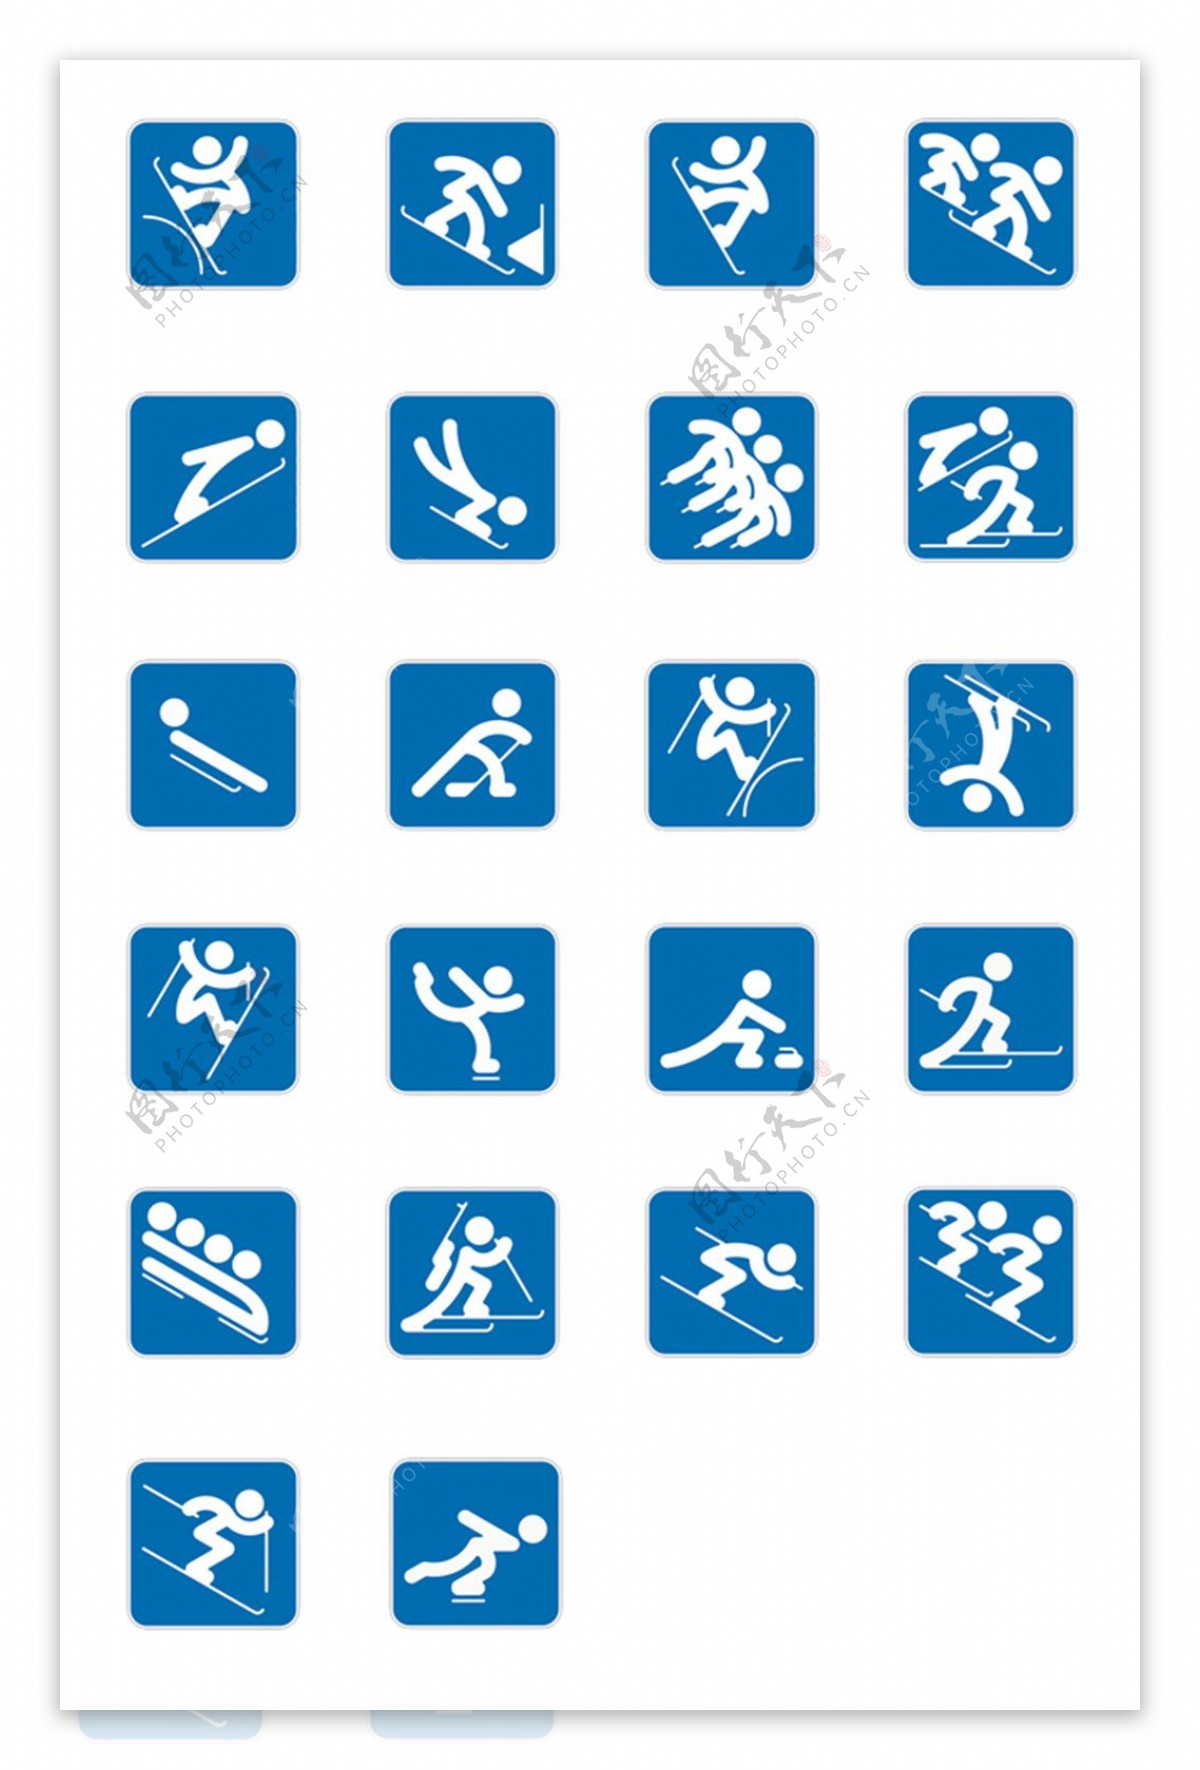 奥林匹克象形图标素材